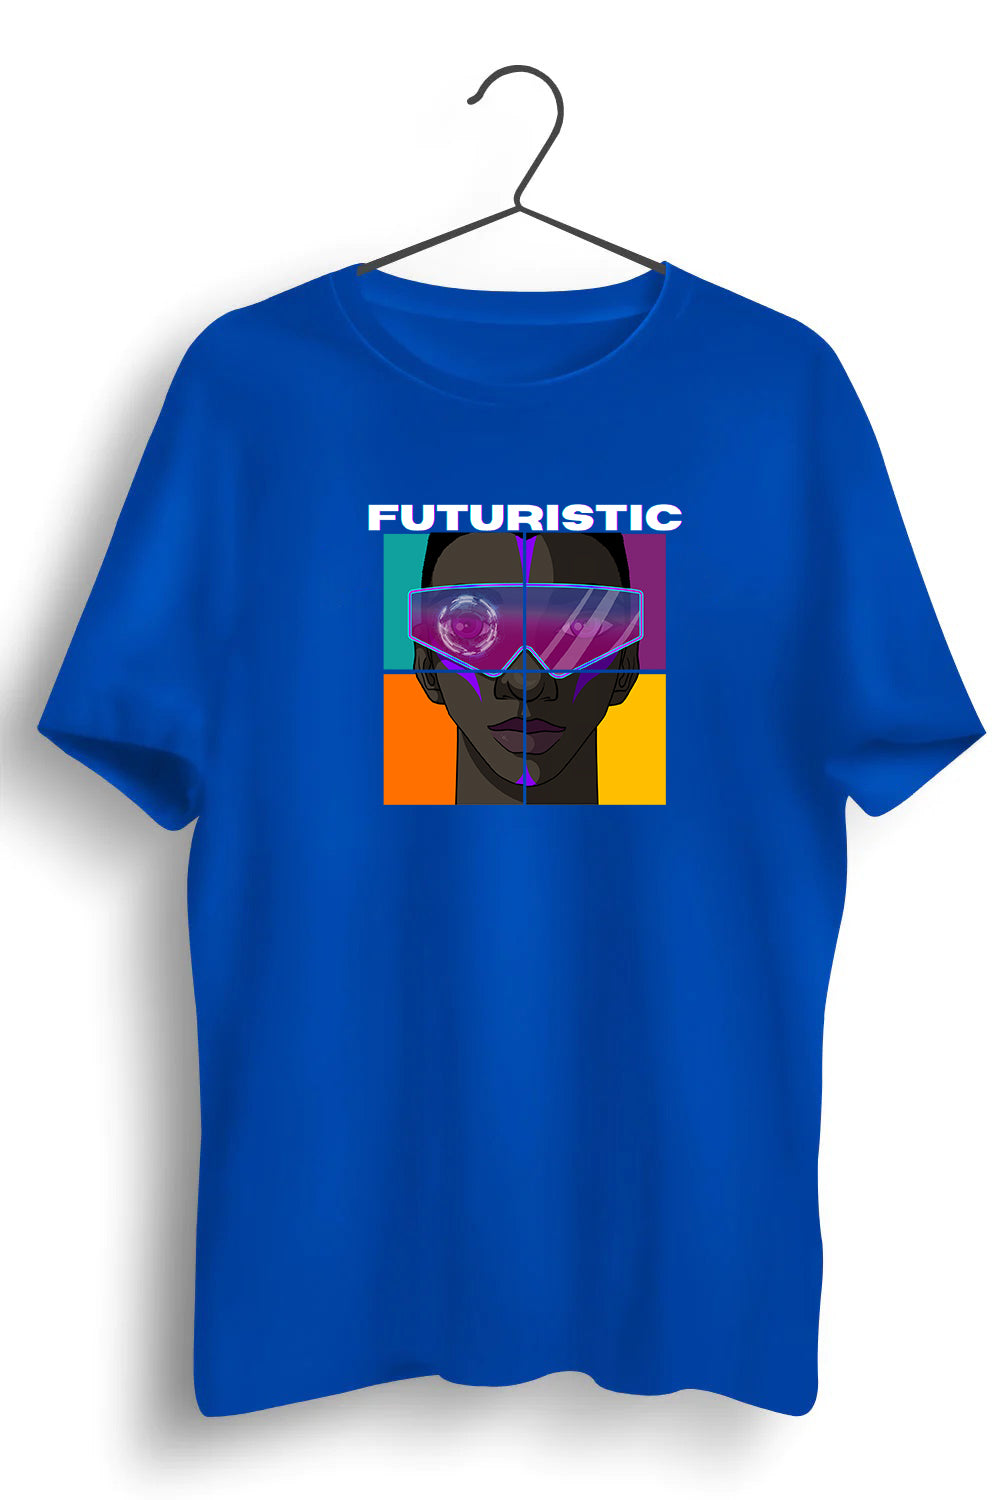 Futuristic Graphic Printed Blue Tshirt